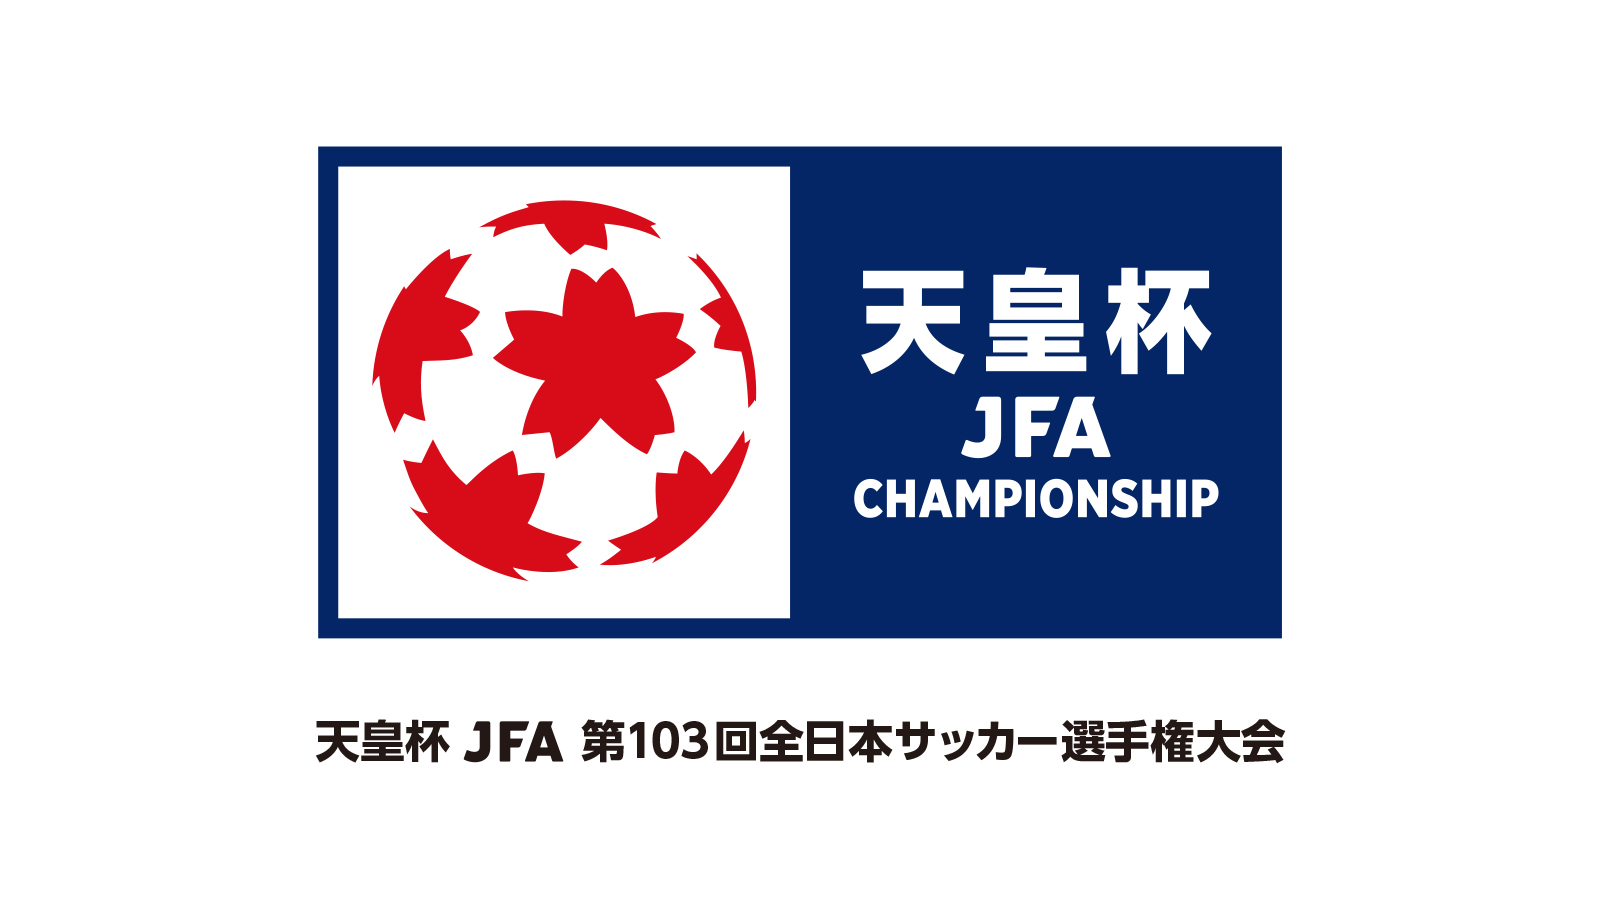 天皇杯 JFA 第103回全日本サッカー選手権大会 3回戦 チケット販売について